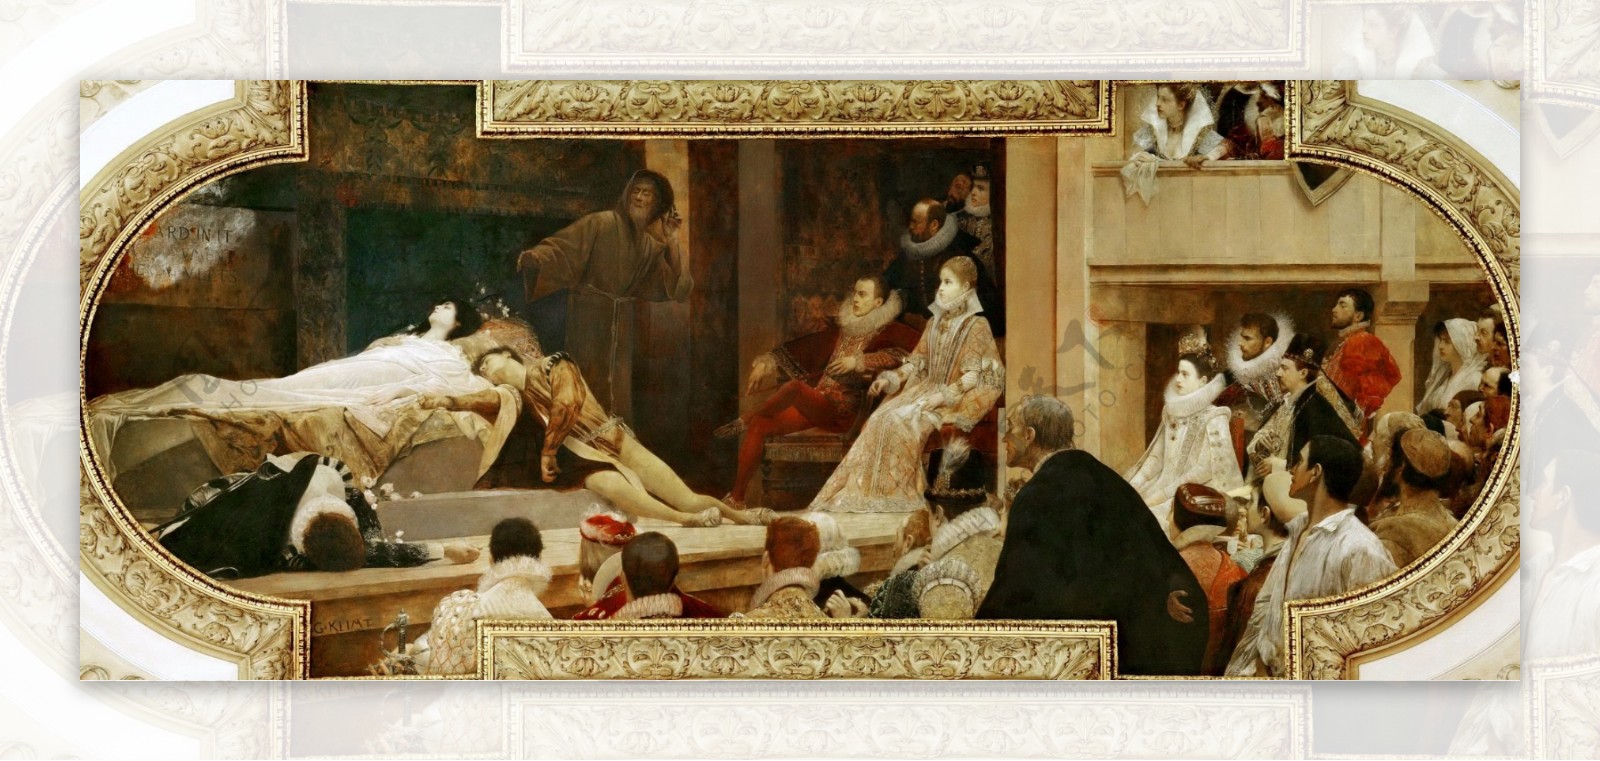 古典主义克里姆特油画与平面现实主义相结合